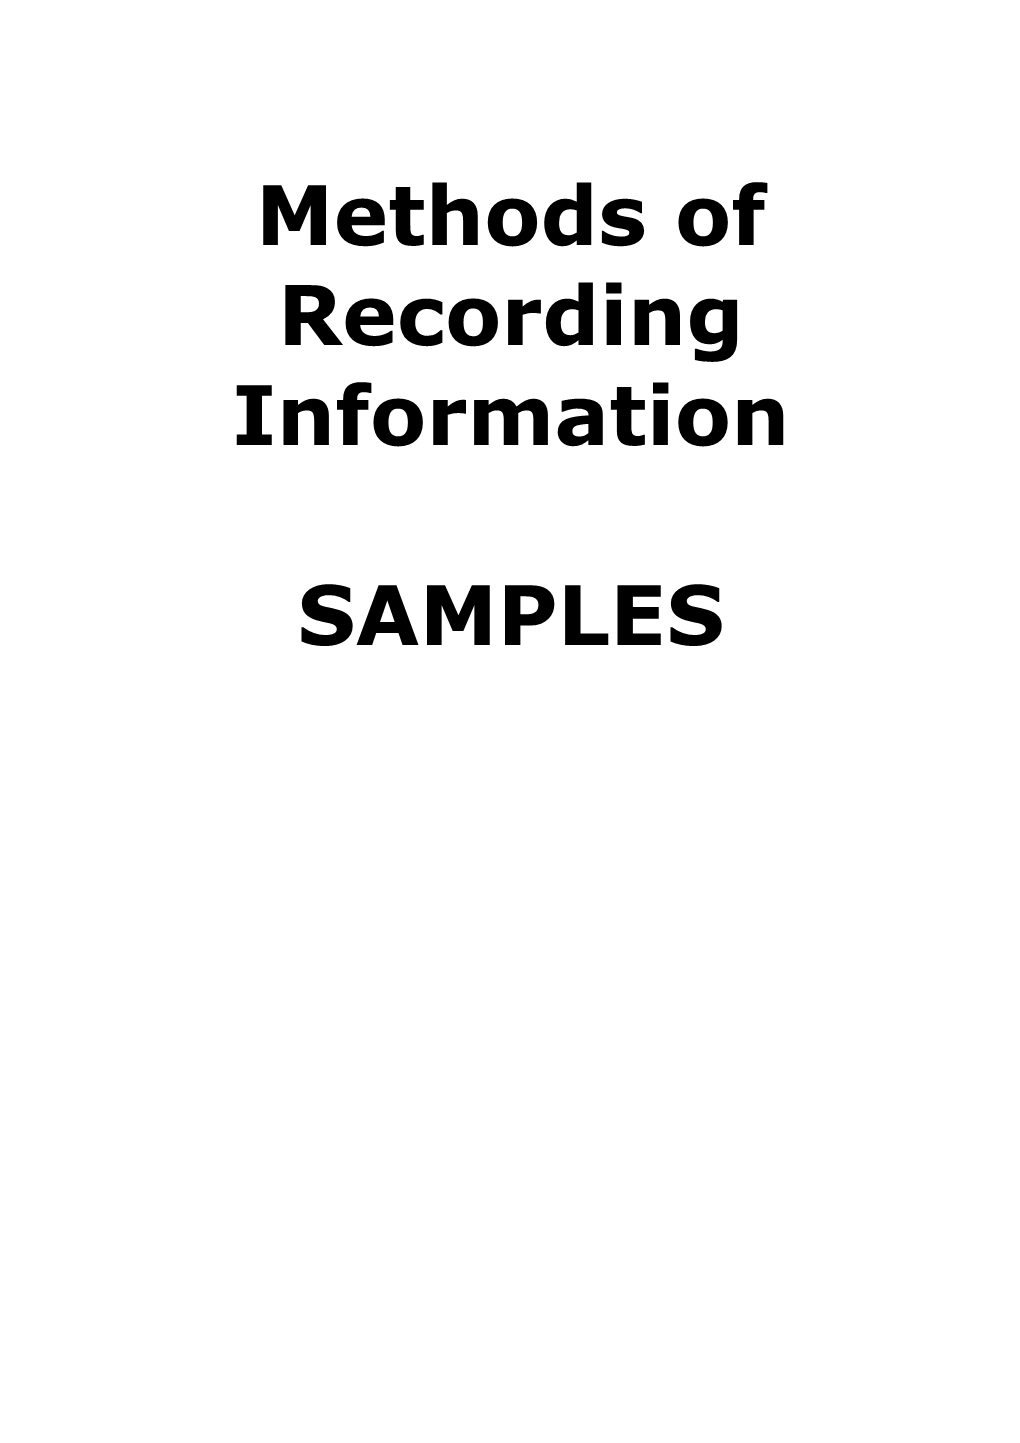 Method 1- Anecdotal Records